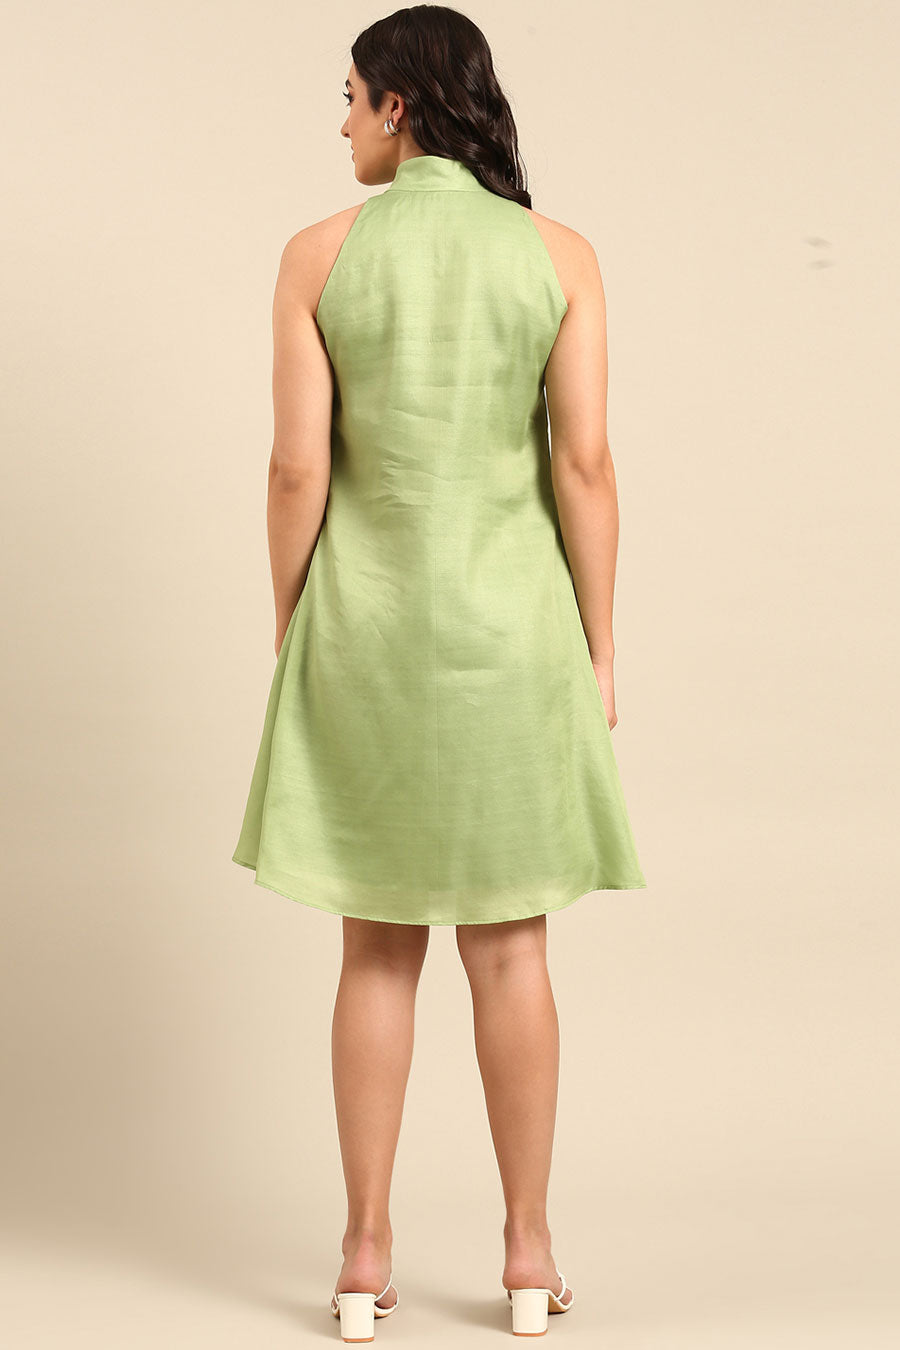 Green Bow Short Dress